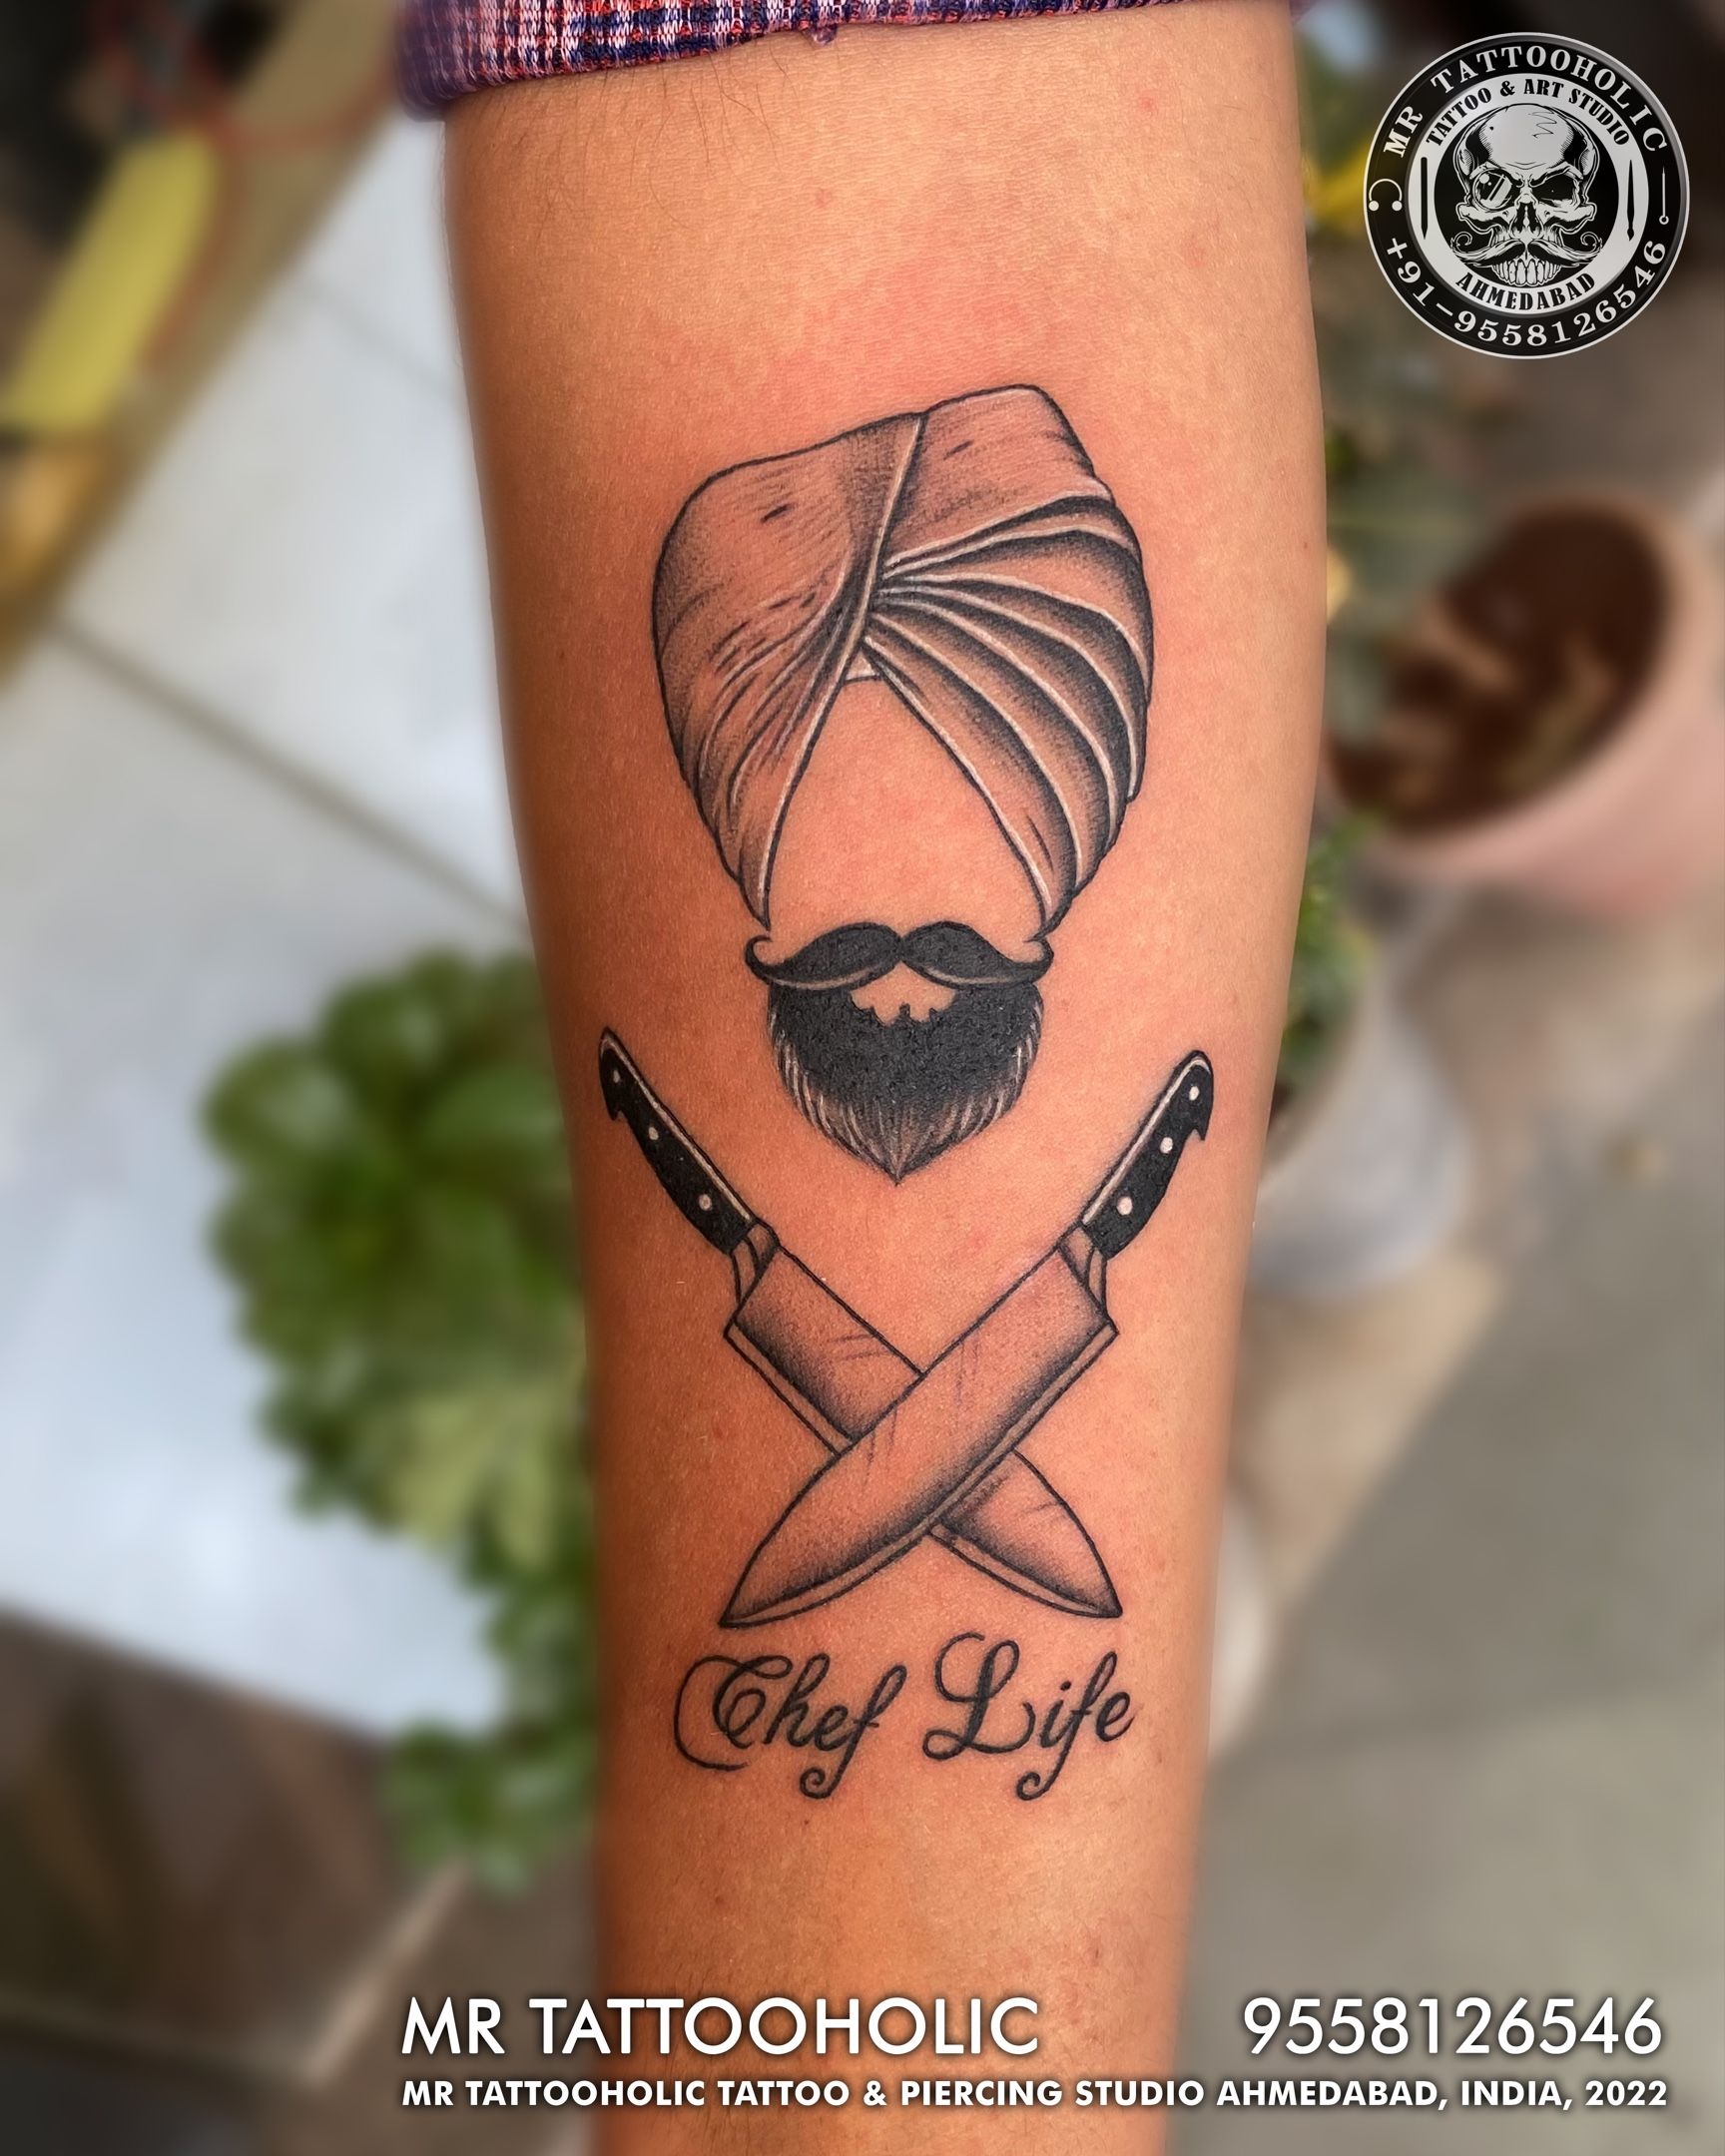 Soul Artz Tattoo  Punjabi text tattoos waheguruji ekonkar  nirbhaunirvair Waheguru ji tattoo Ekonkar tattoo Nirbhau nirvair tattoo   Facebook